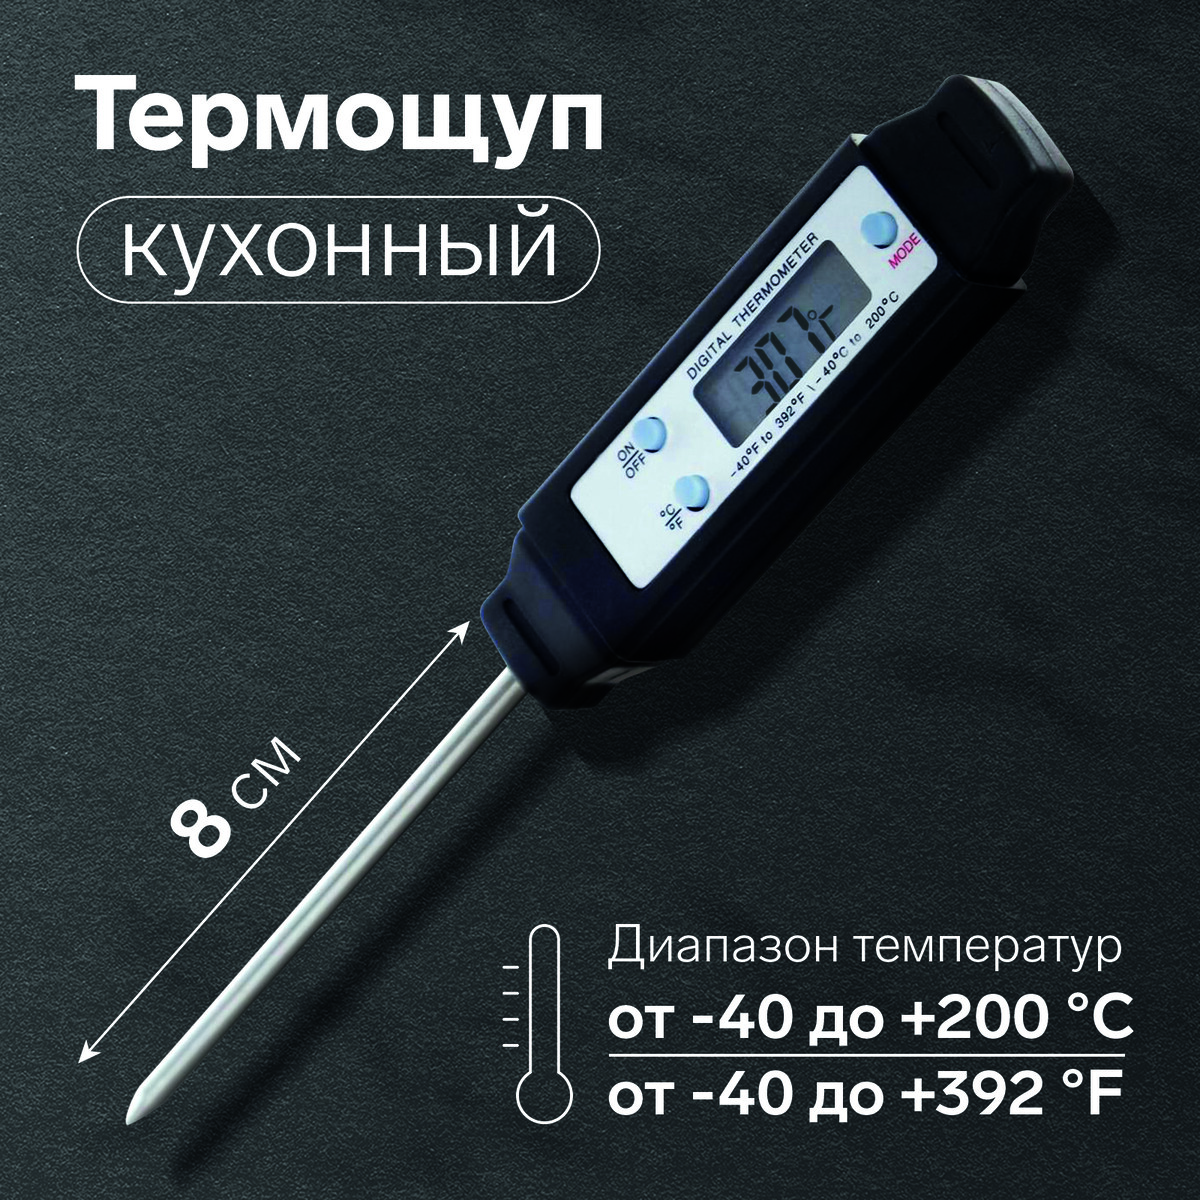 Термощуп кухонный ltp-001, максимальная температура 200 °c, от батареек lr44, черный